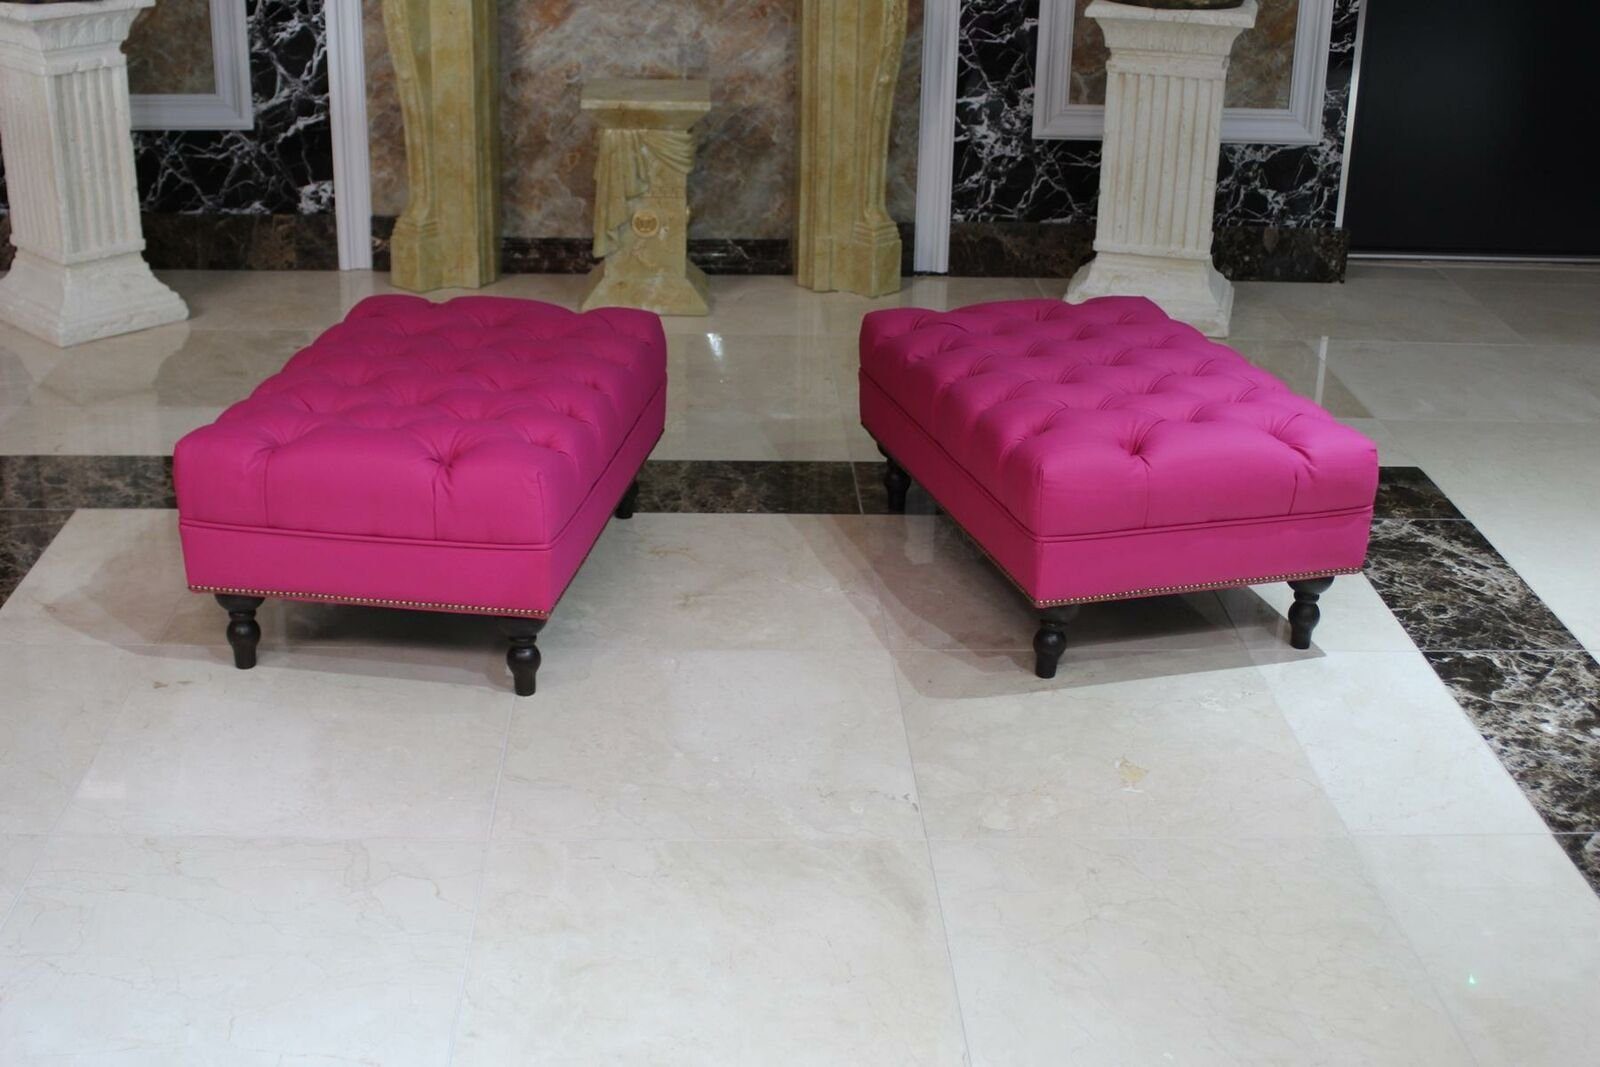 Modern Sofort New Design Hocker Elegant Soft Pouffe JVmoebel Stool Luxury Rosa Footstool Textile